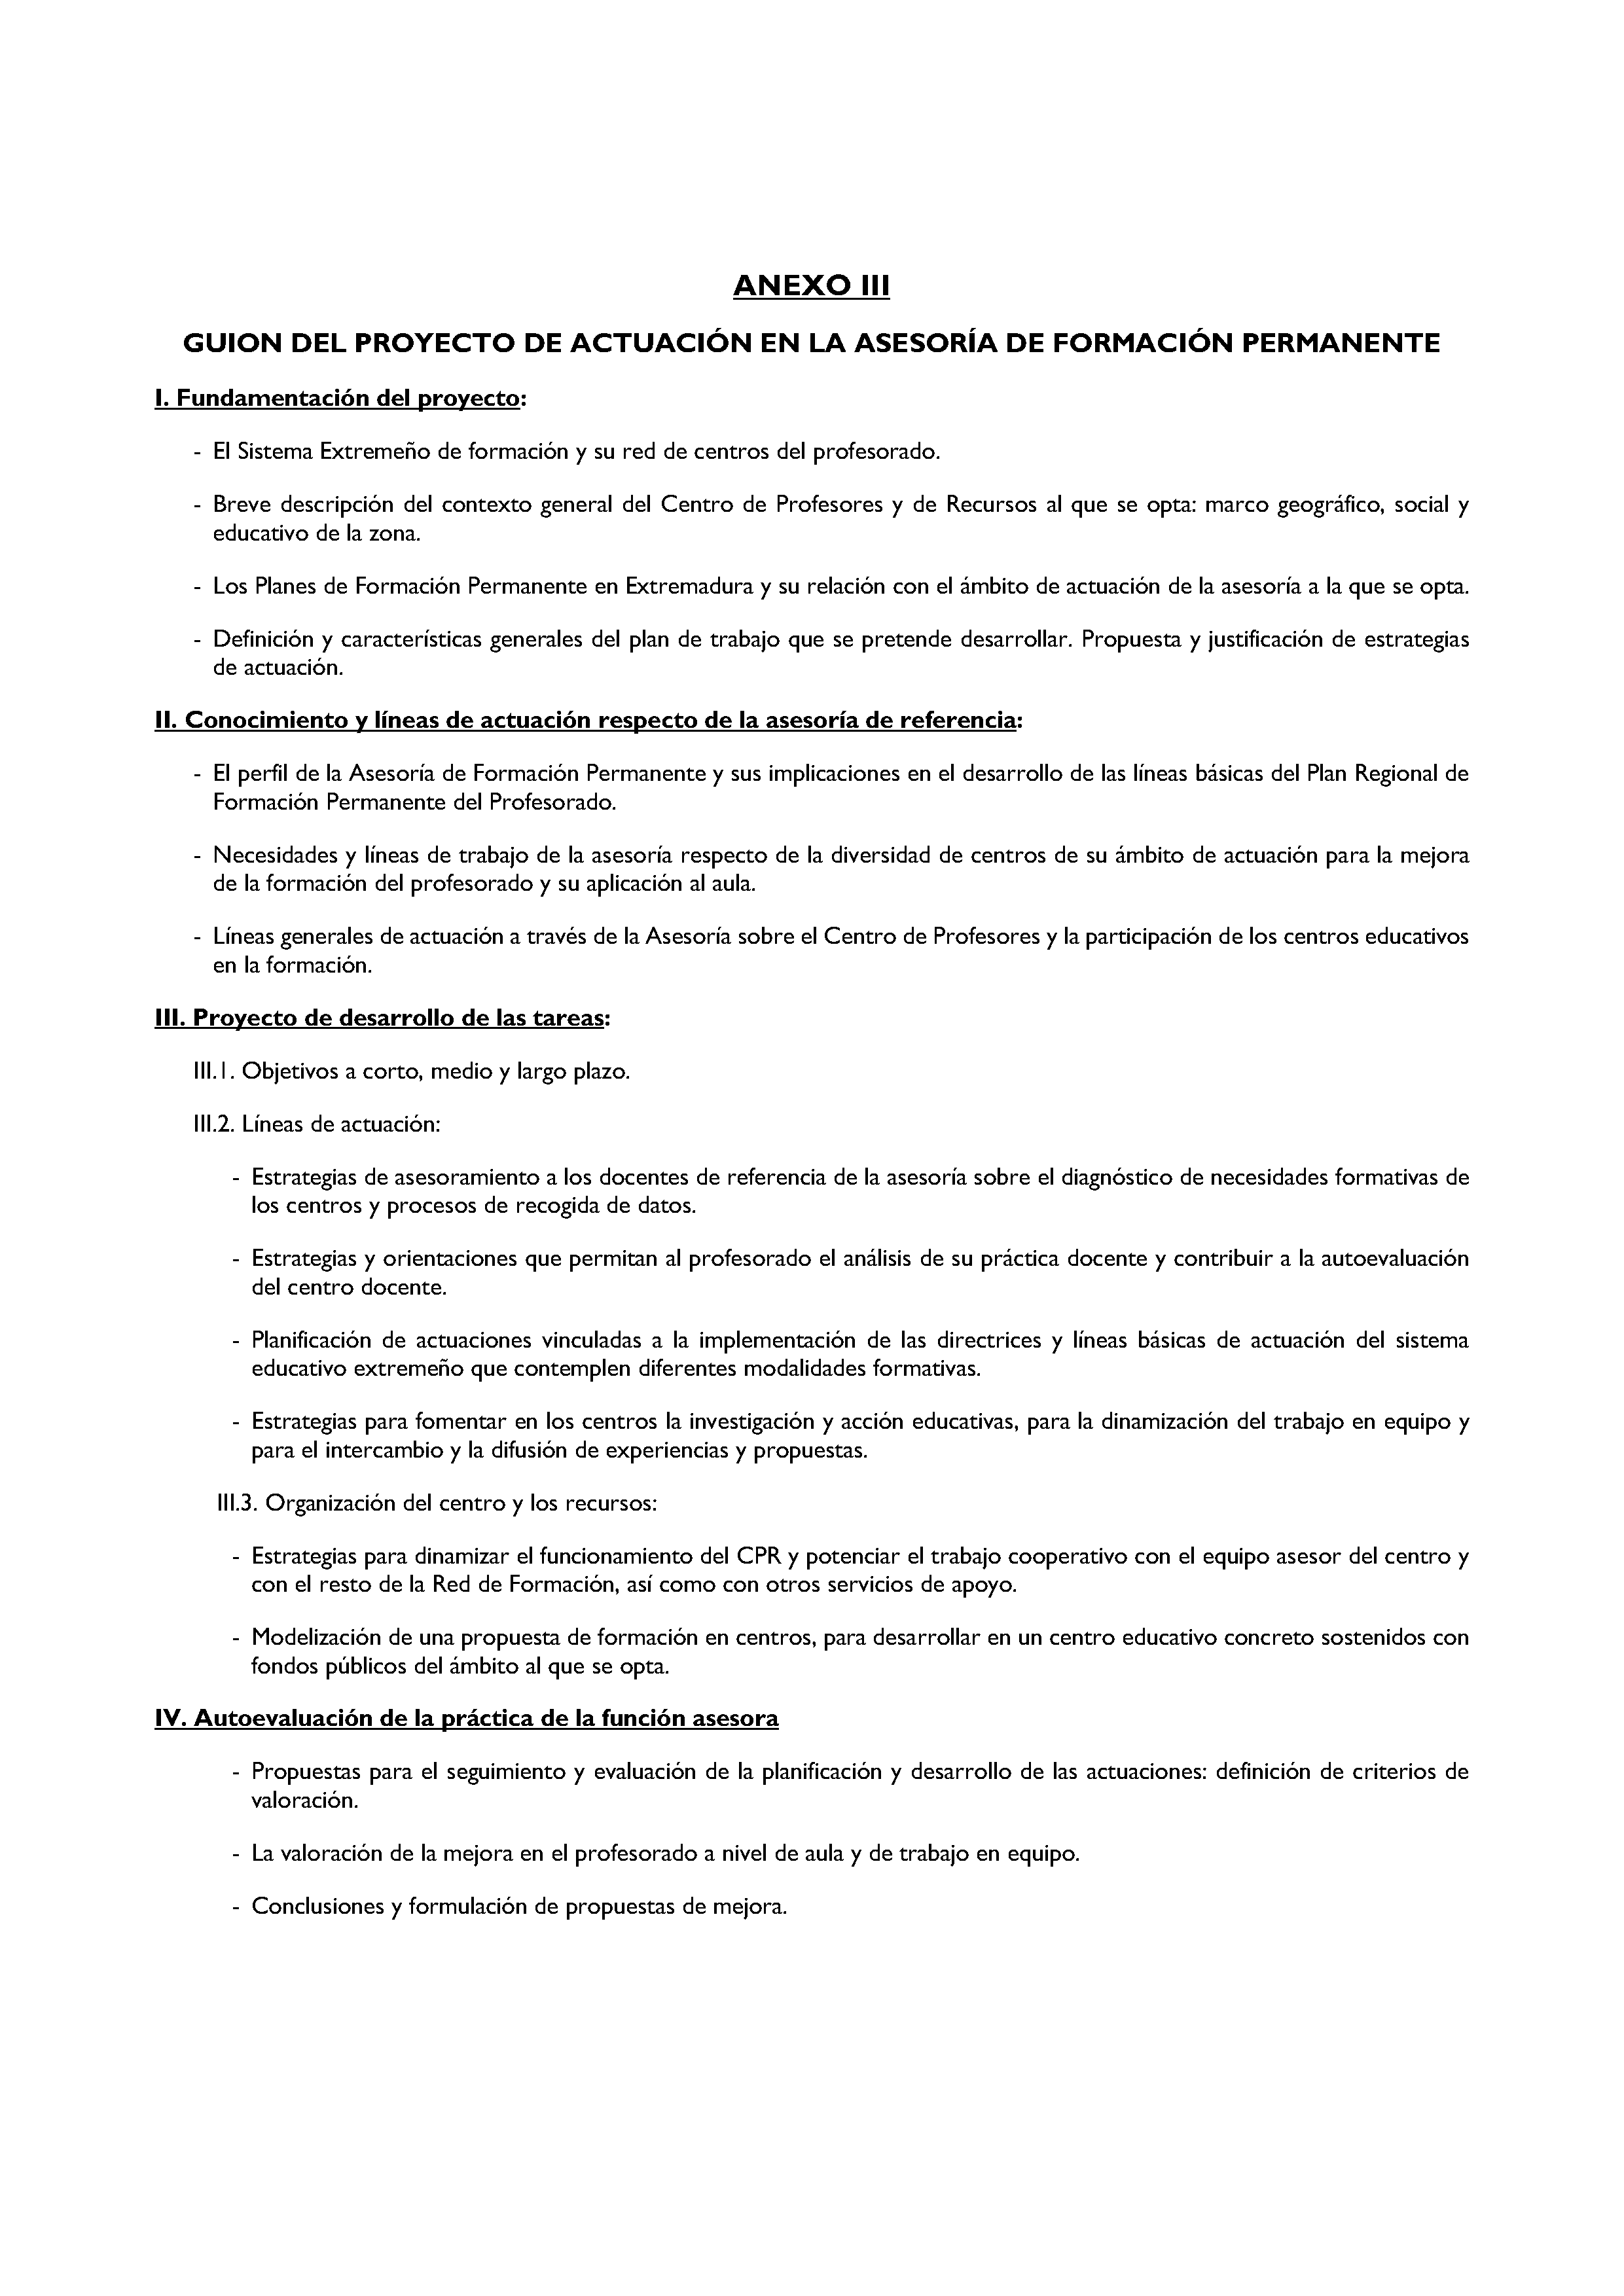 ANEXO III GUION DEL PROYECTO DE ACTUACION EN LA ASESORIA DE FORMACION PERMANENTE Pag 6